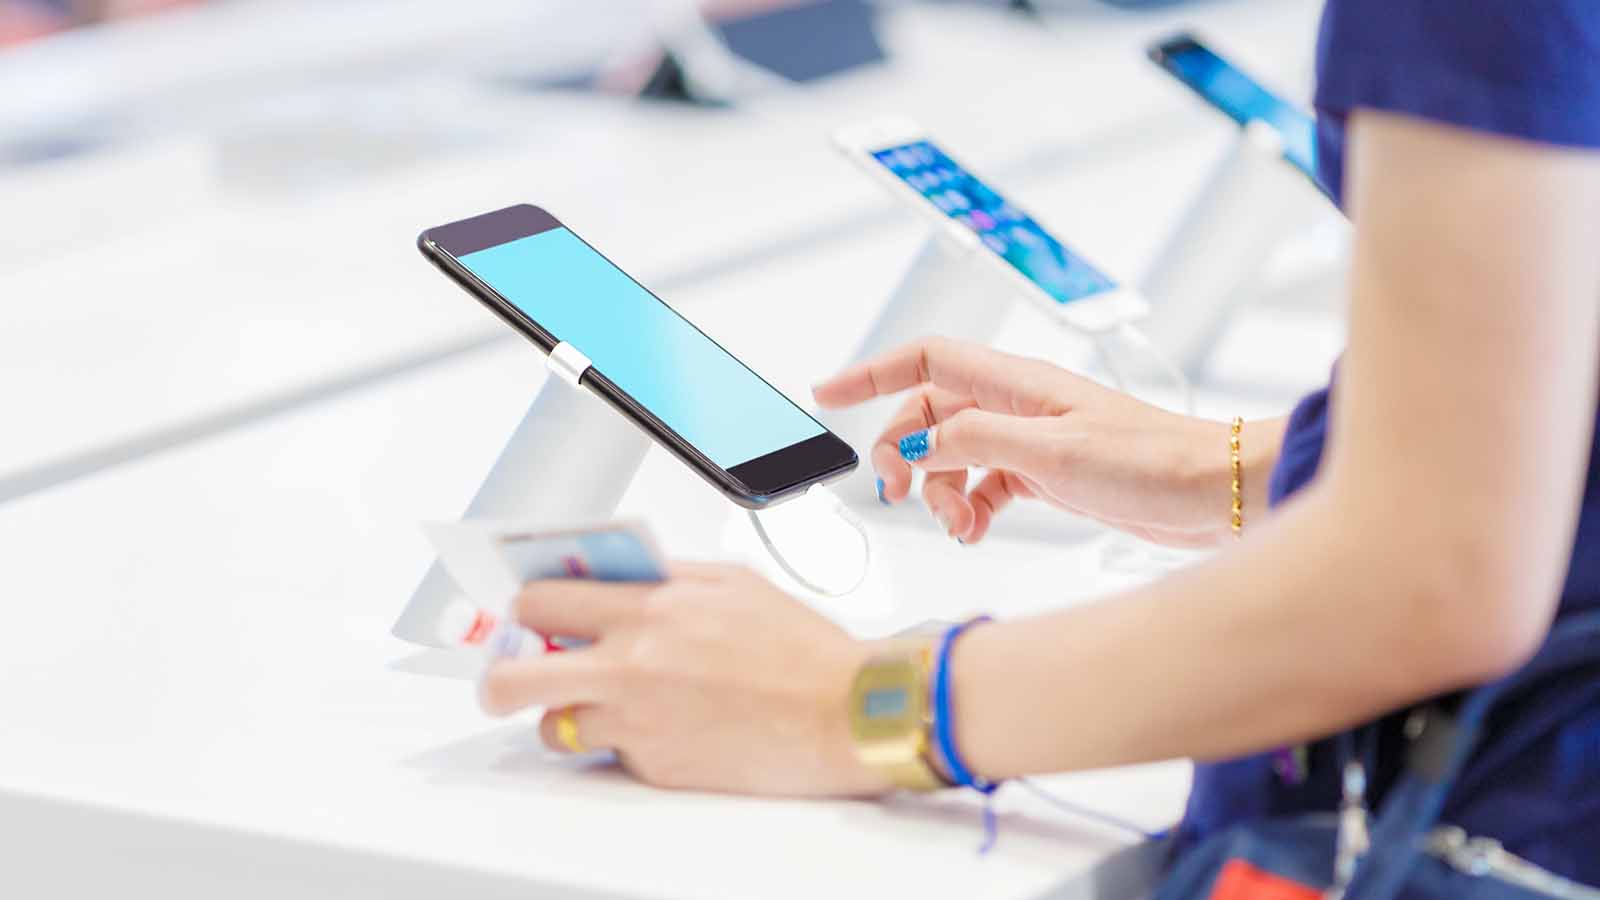 Foto: Shutterstock. Bildet viser en kvinne som prøver en telefon i en butikk.